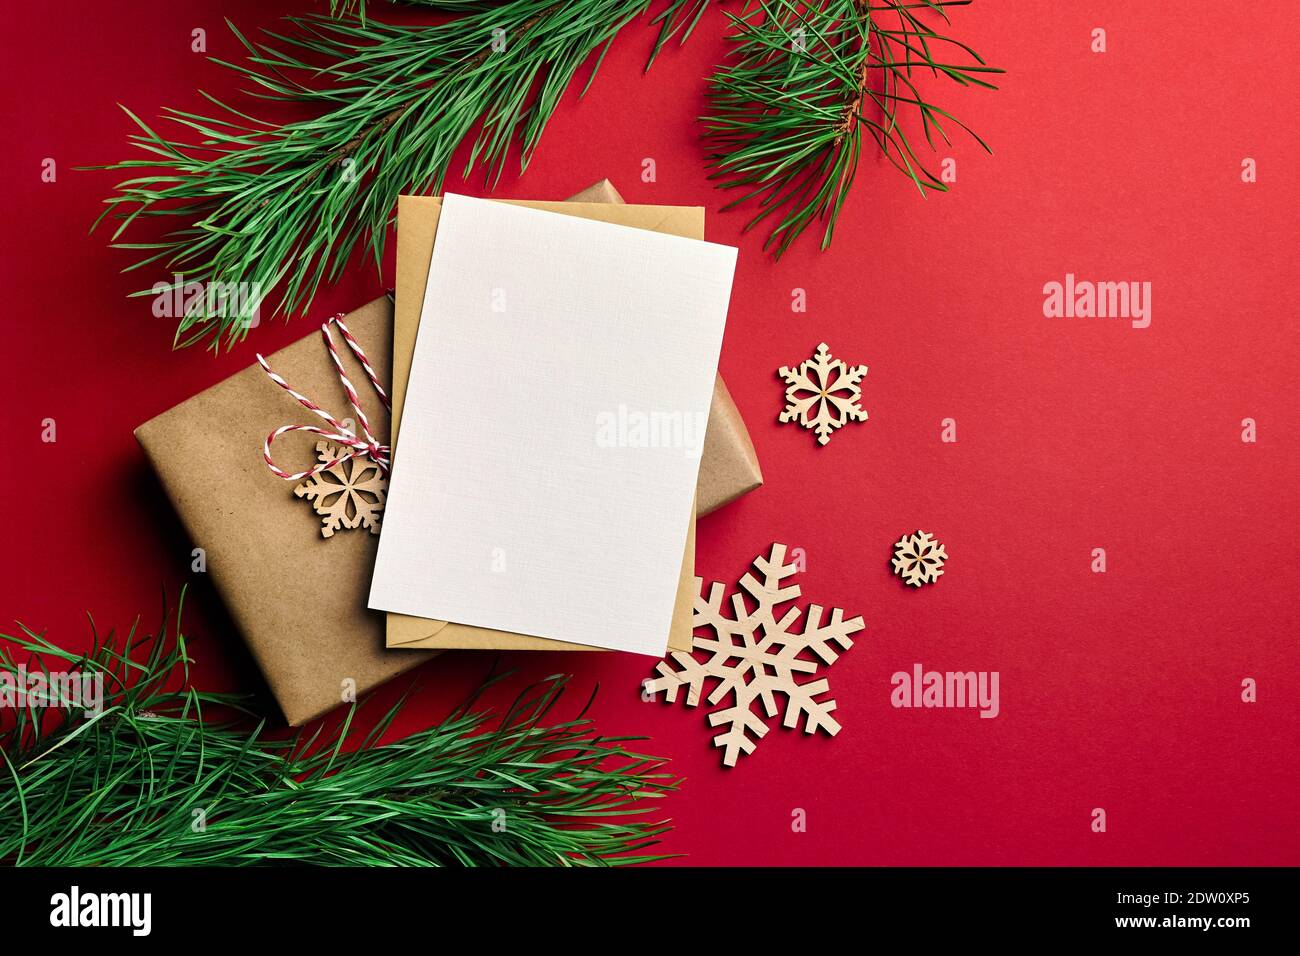 Weihnachten Grußkarte mockup. Geschenkbox, hölzerne Schneeflocken Dekorationen und Kiefernäste auf rotem Papier Hintergrund. Draufsicht, Kopierbereich. Stockfoto